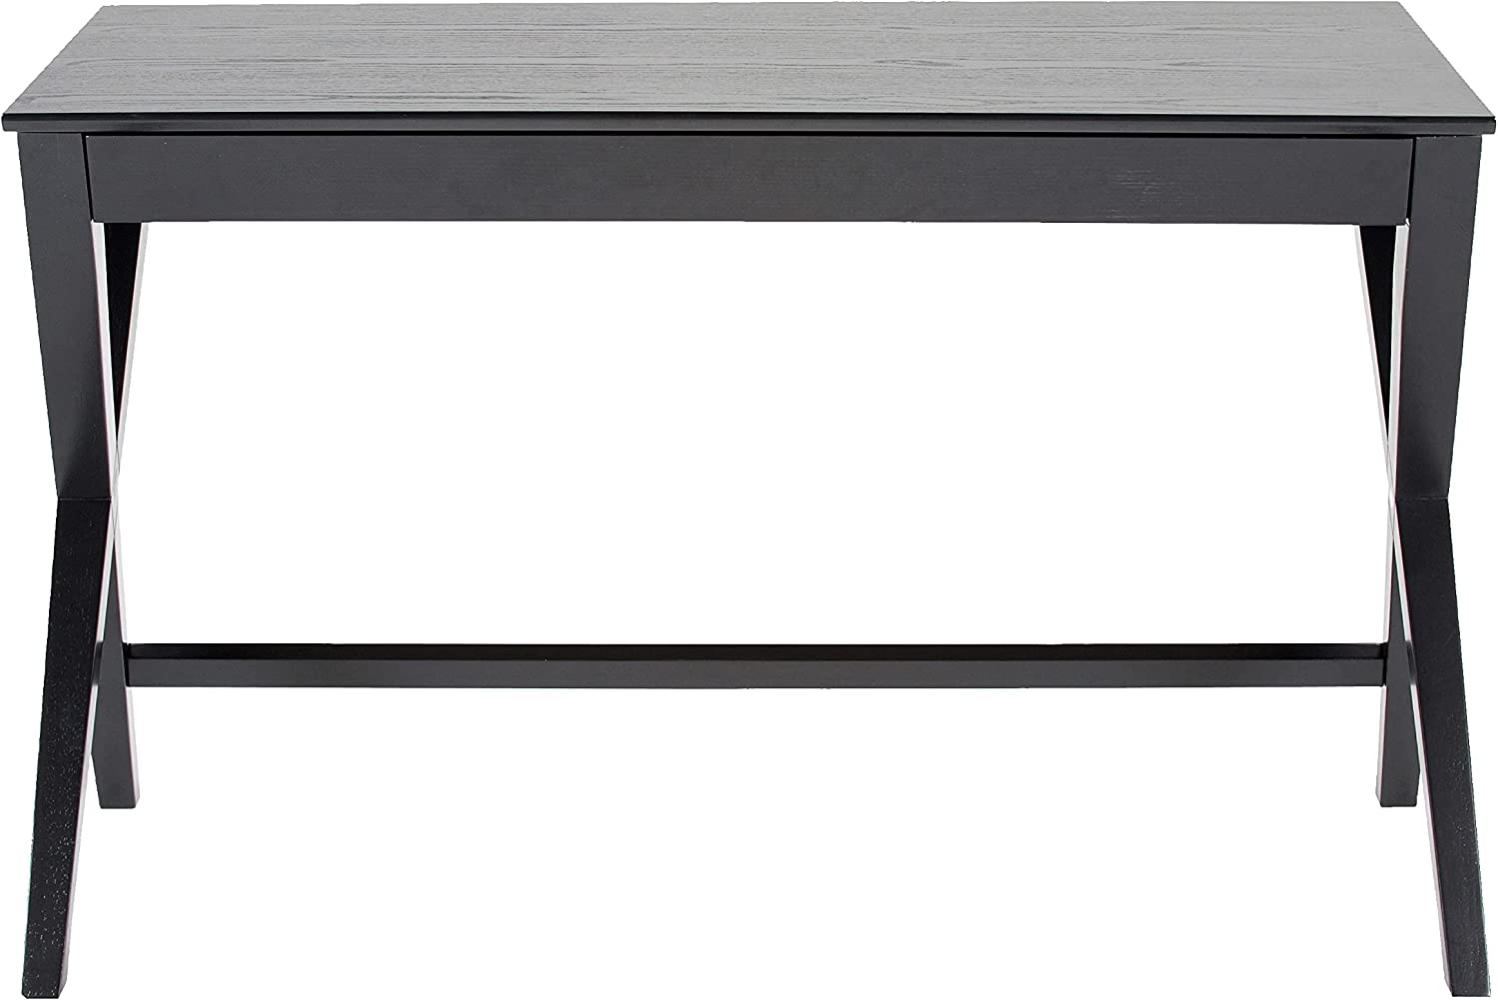 Schreibtisch mit Schublade, schwarz, 75 x 120 x 60 cm Bild 1